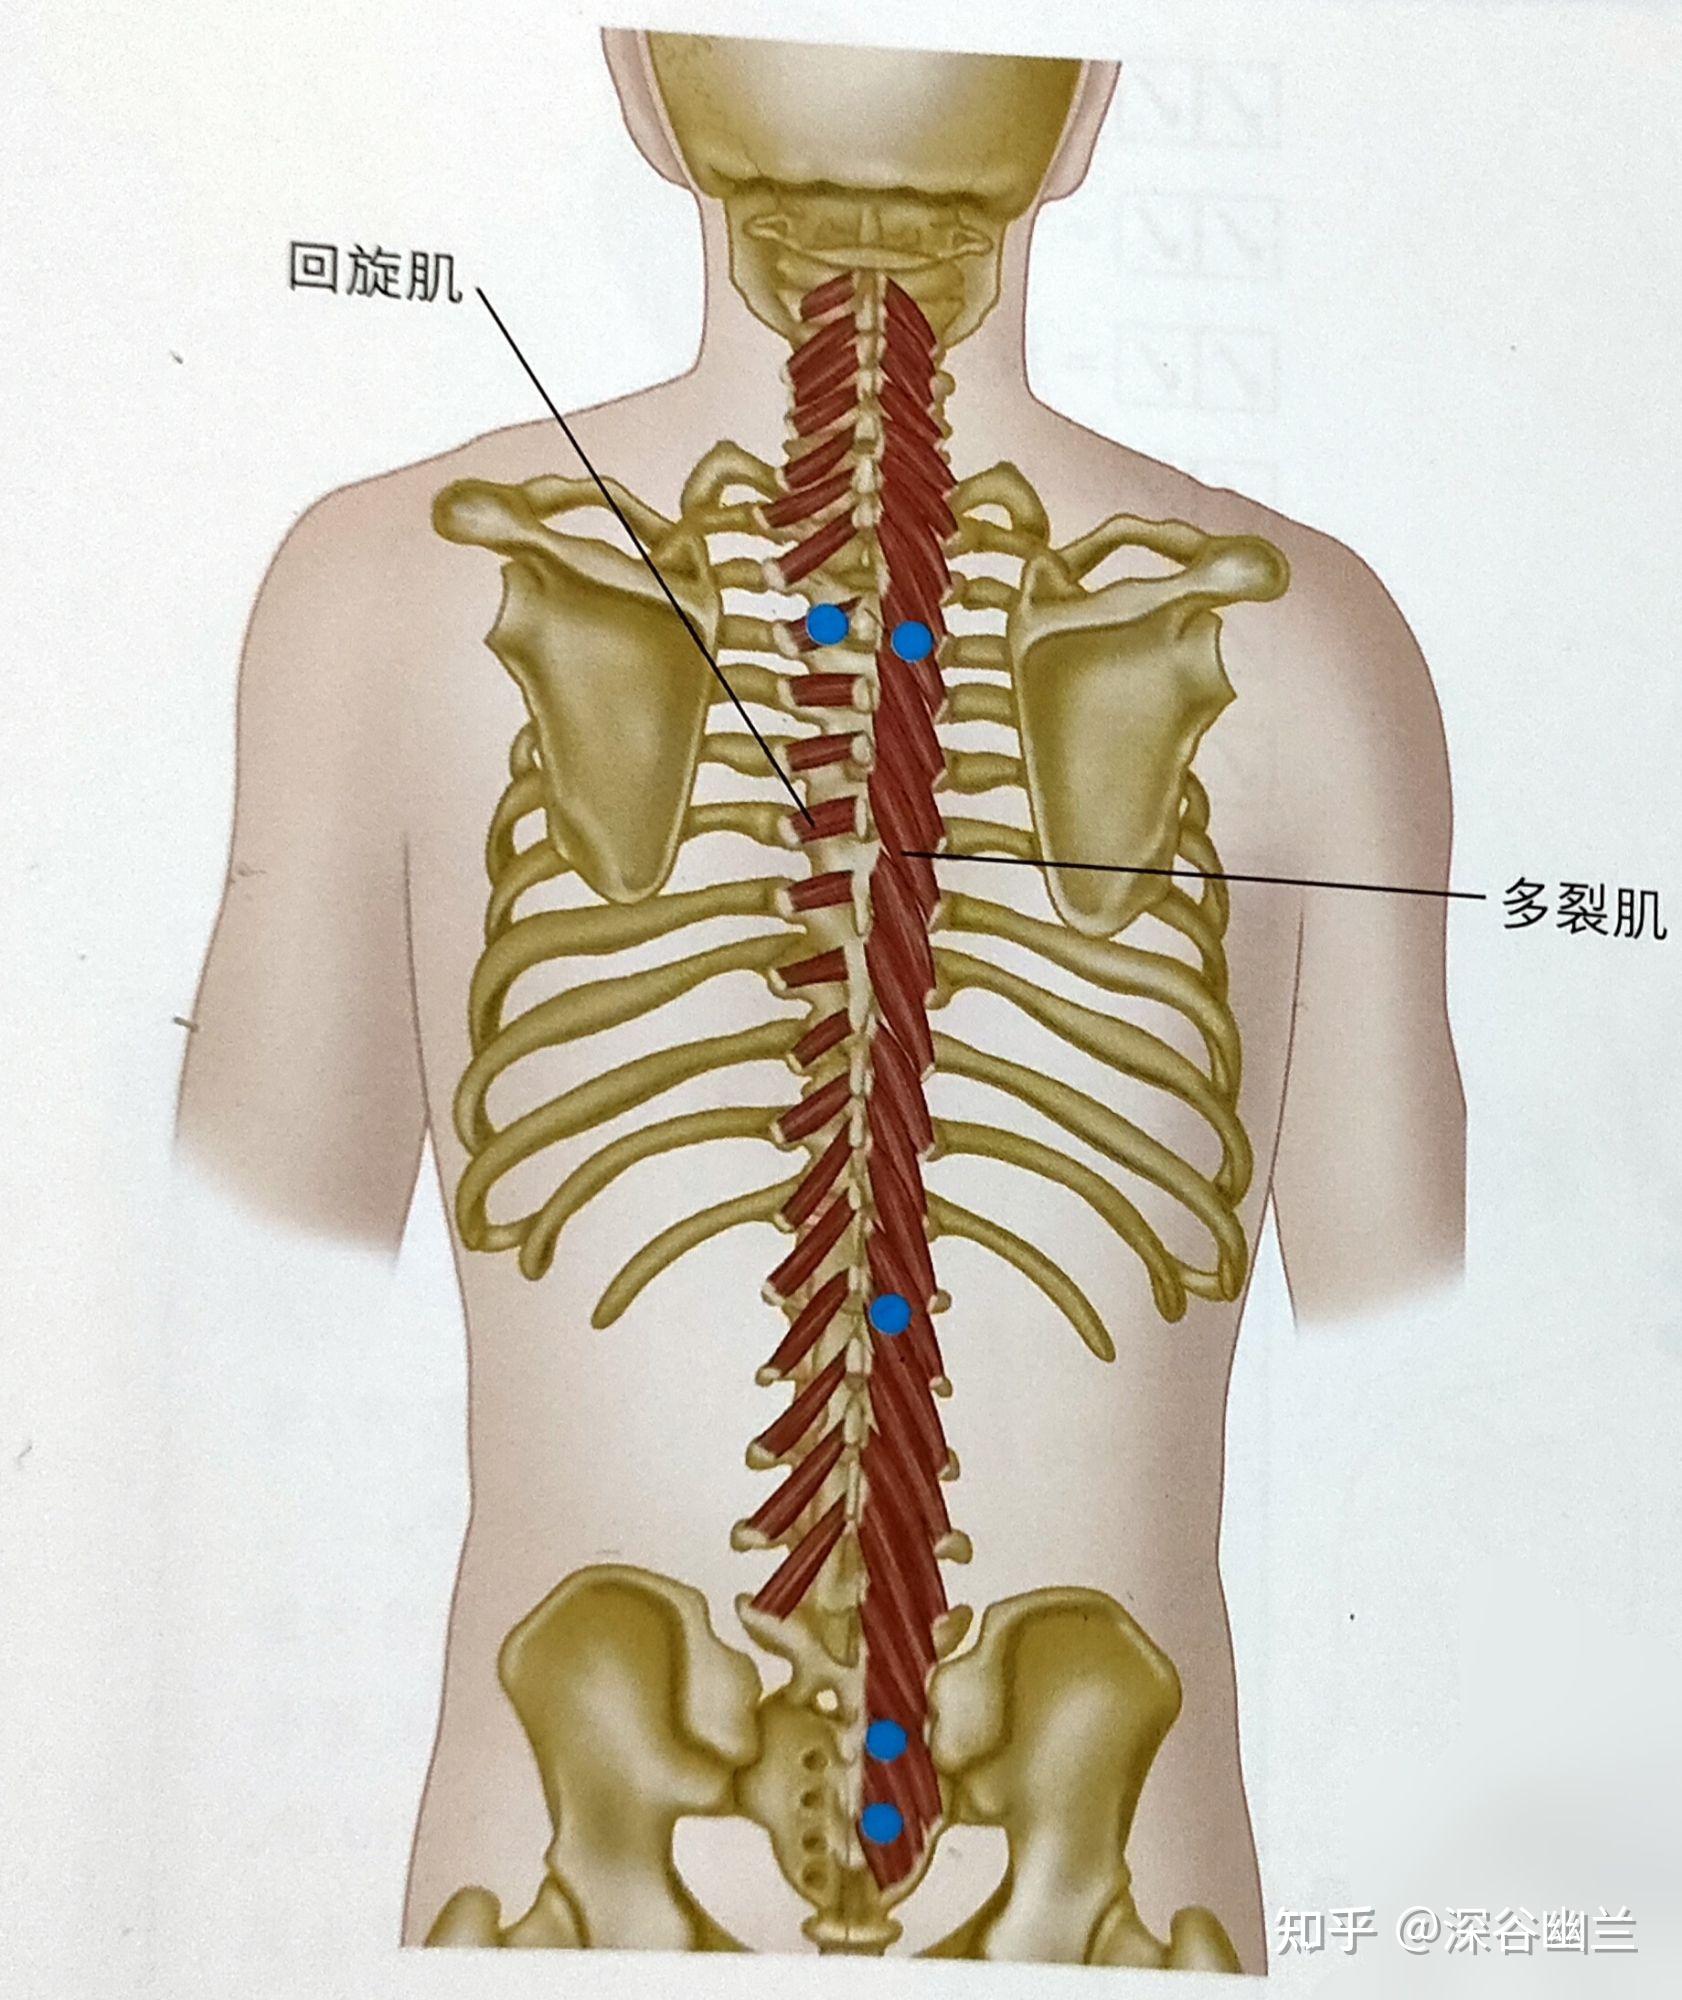 所有腰椎的乳突(上关节突的后缘)所有胸椎的棘突